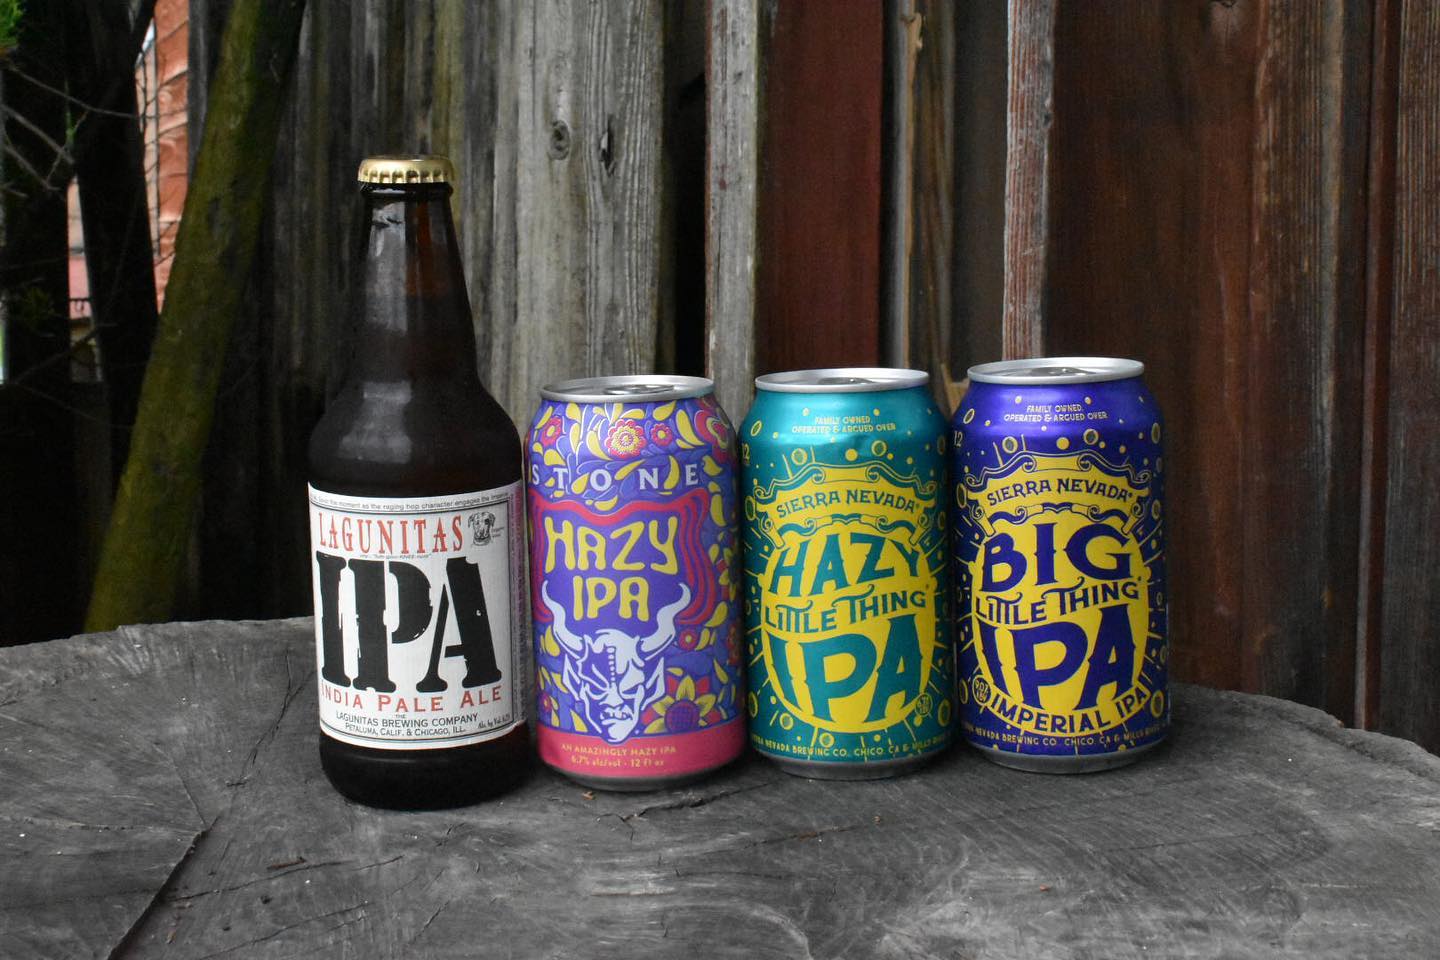 アメリカクラフトビール界の大御所からIPA着陸STONE、SIERRA NEVADA、LAGUNITAS、どれも、間違いないフレーバーと良い具合のクセがあり、好きなビールの中にランクインしてしまう程のハマり具合。インパクトの強いホップ感とスッキリとした抜け感を、是非ご堪能ください#クラフトビール #ipa #hazyipa #stonebrewing #sierranevada #lagunitas #クラフトビール量り売り #タップルーム #八ヶ岳 #原村 #ストーブハウス原村